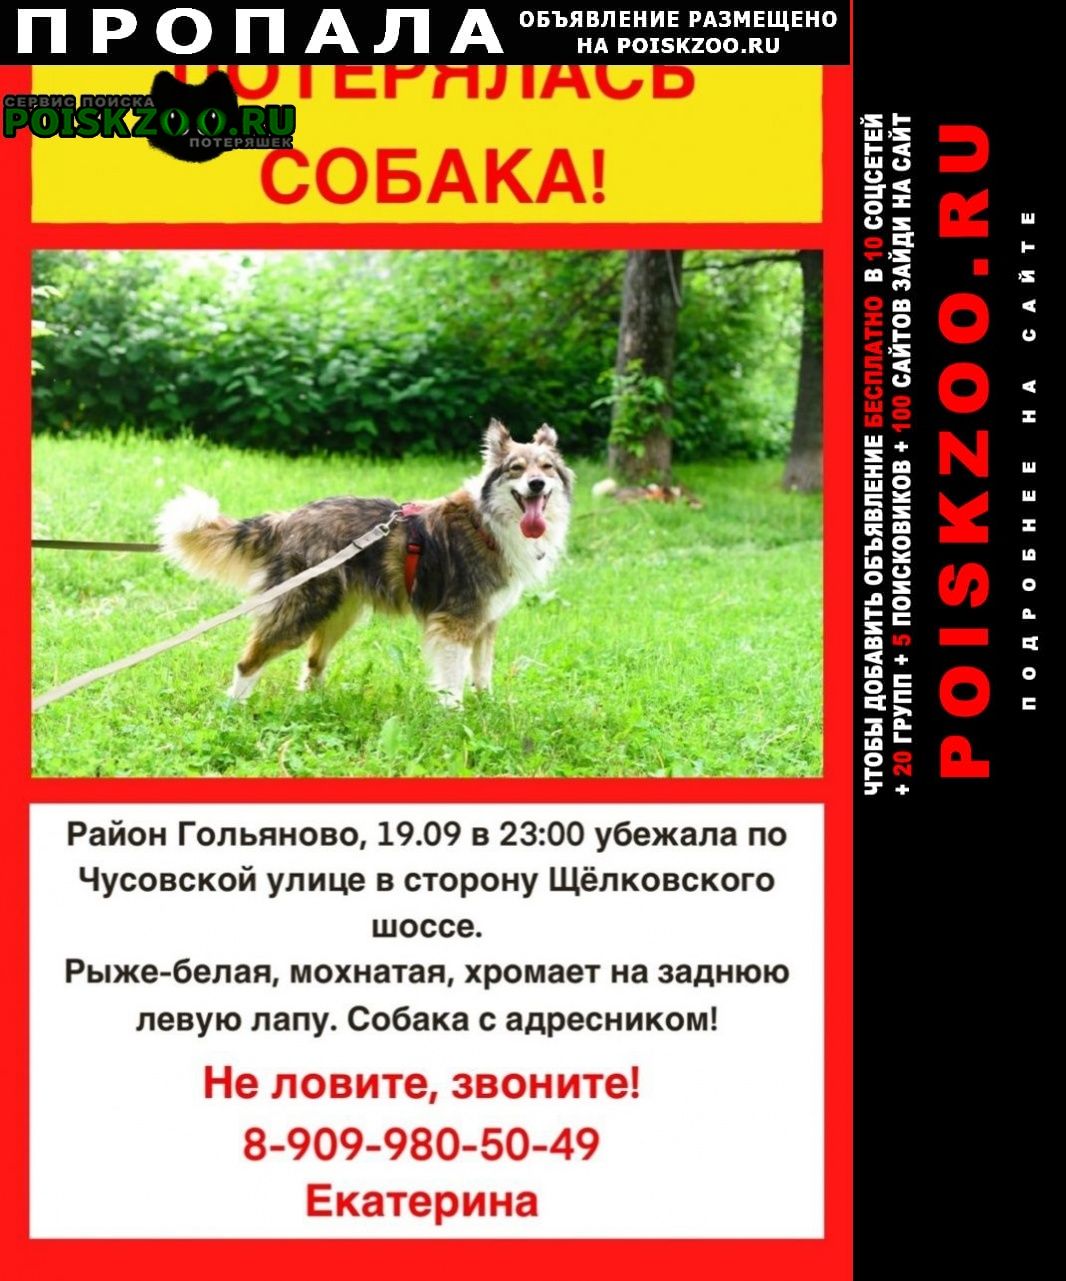 Пропала собака потерялась собака 19.09 Москва